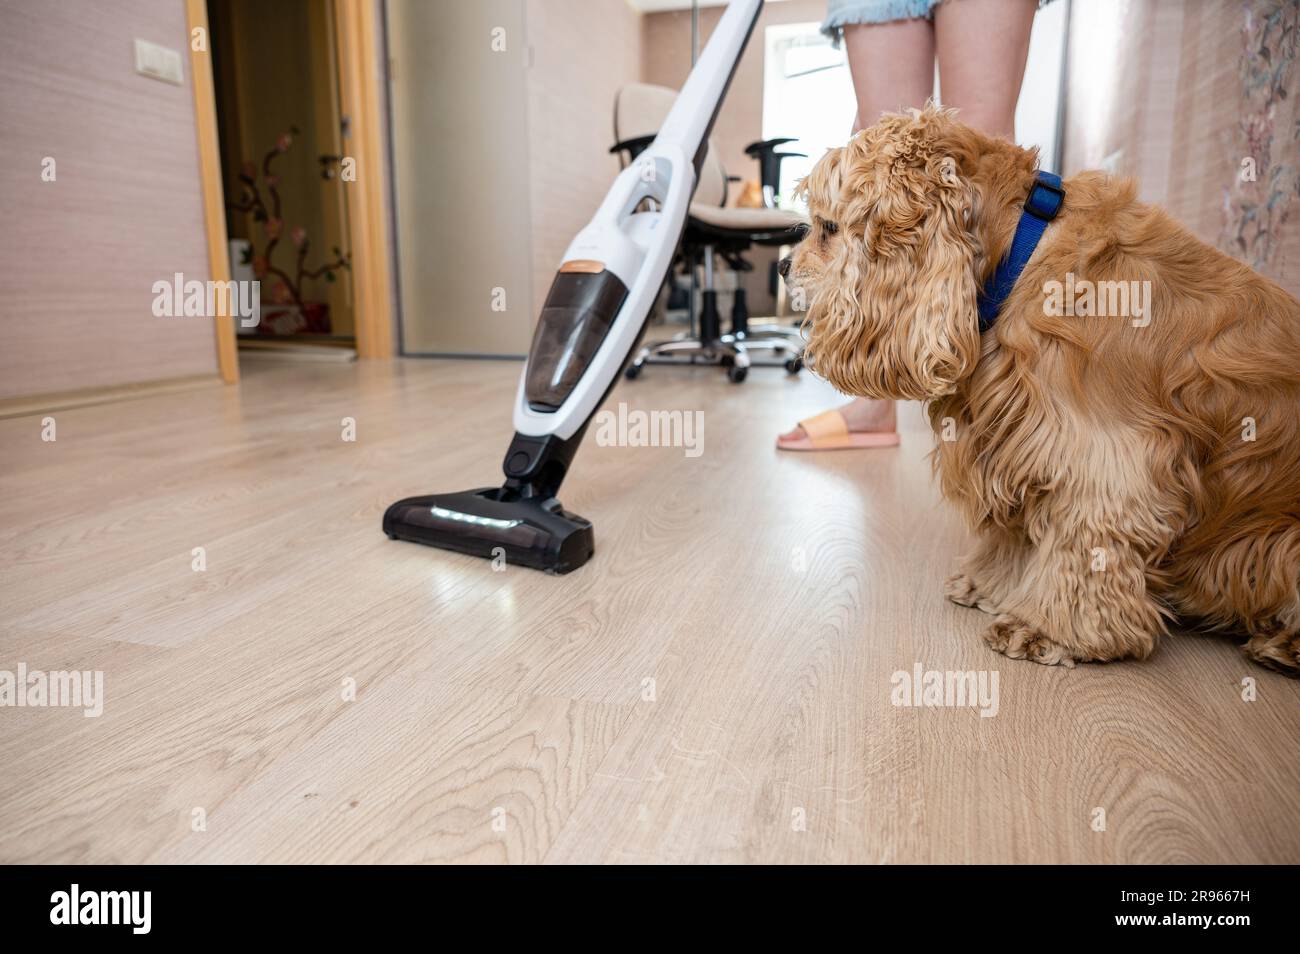 Le chien regarde le nettoyage dans la maison avec un aspirateur. Concentrez-vous sur le chien. Banque D'Images